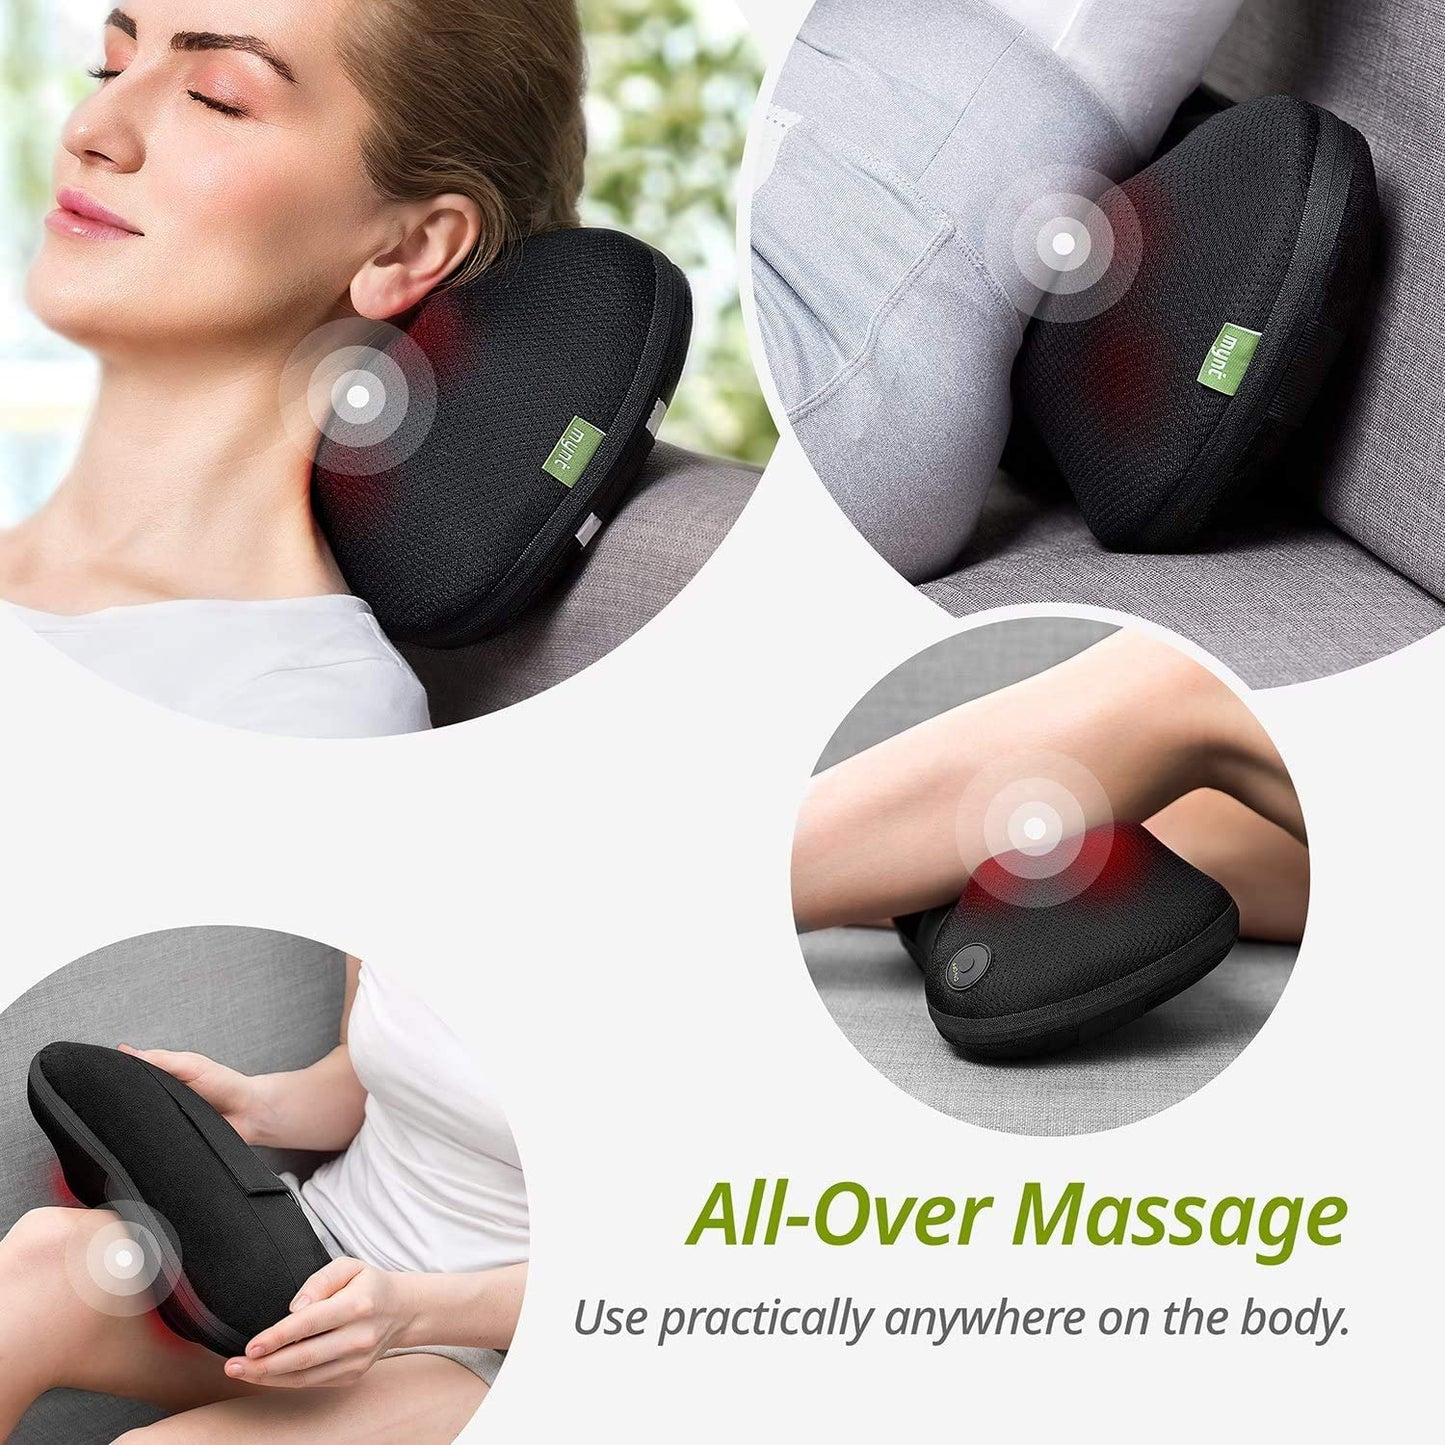 Etekcity Wireless Shiatsu Neck & Shoulder Massager